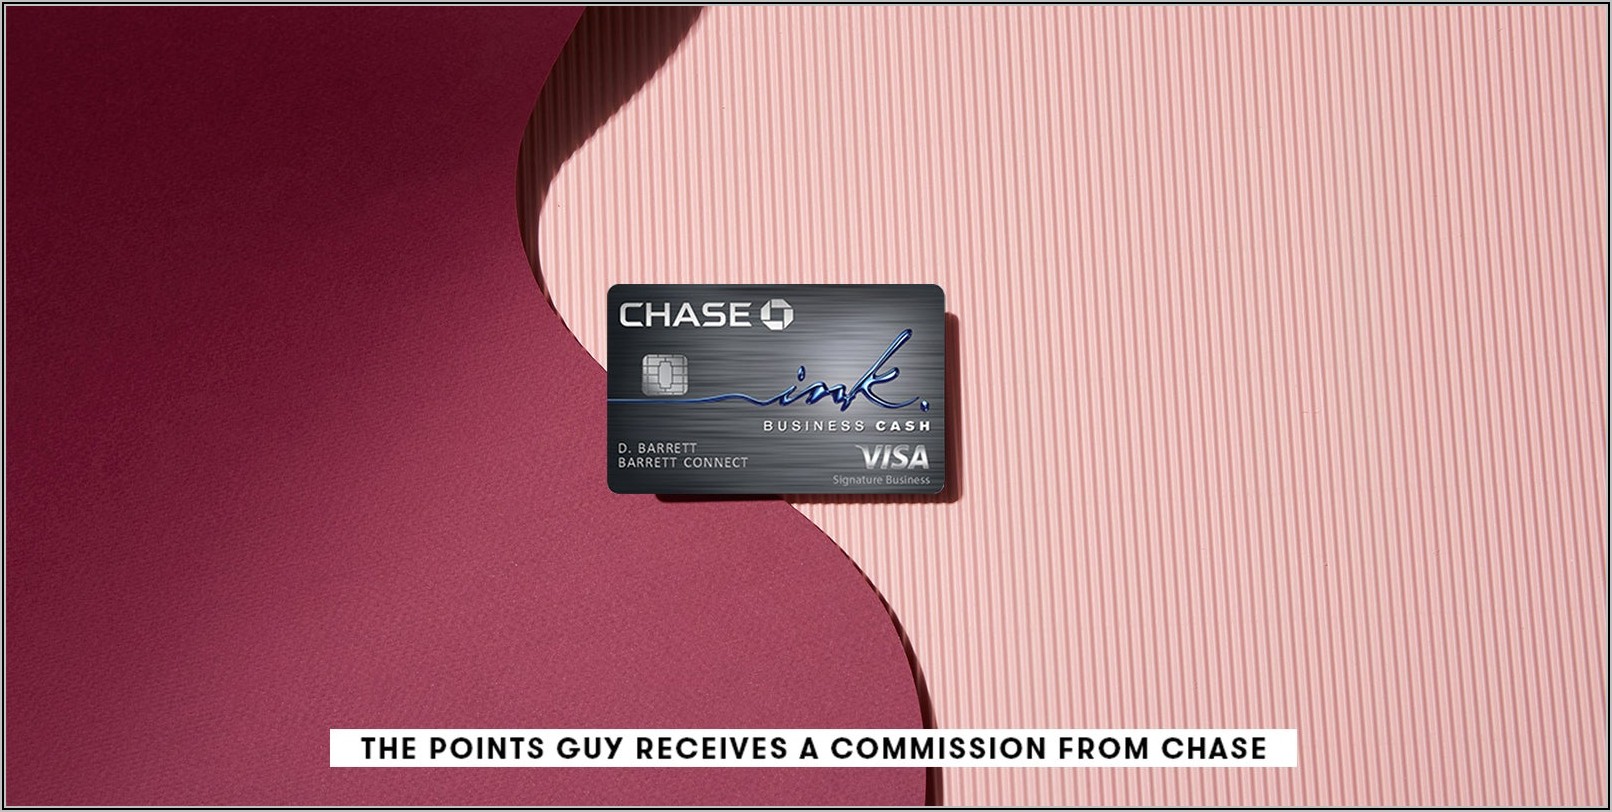 Chase Ink Business Cash Card $500 Bonus Cash Back